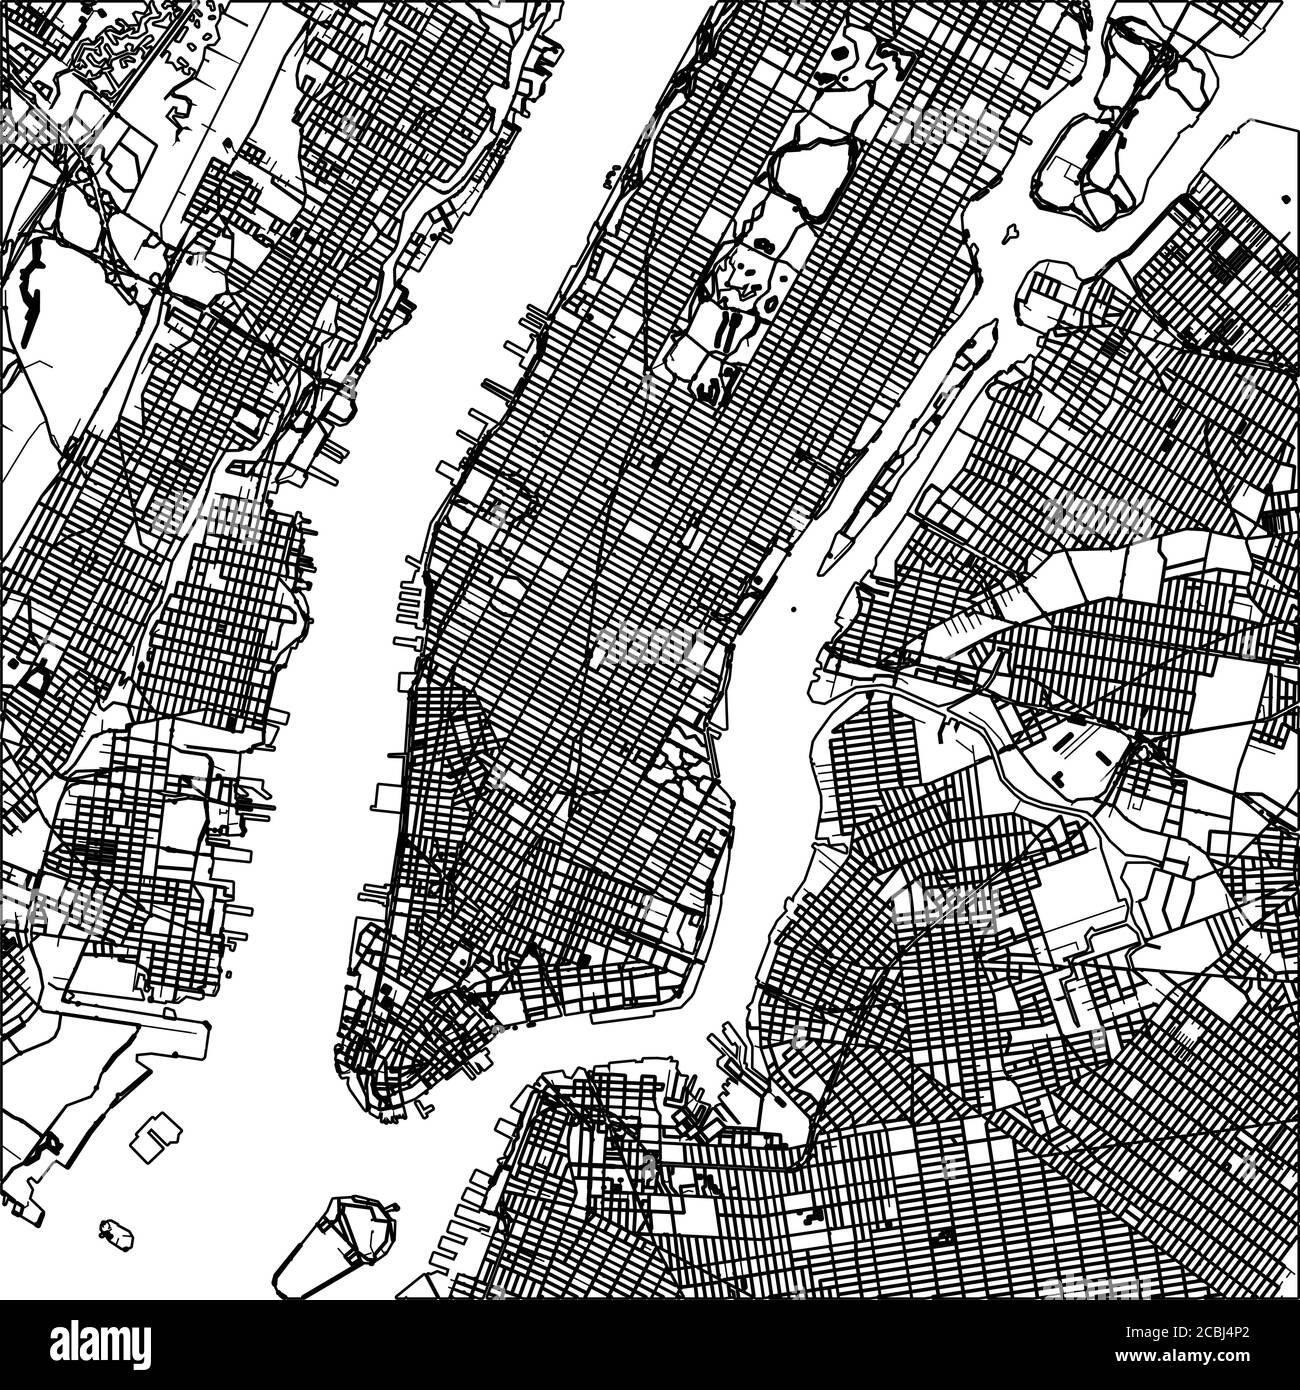 Lineart mappa Manhattan nyc. Illustrazione in bianco e nero disegnata a mano. Simbolo dell'icona per la stampa e l'etichettatura. Illustrazione Vettoriale